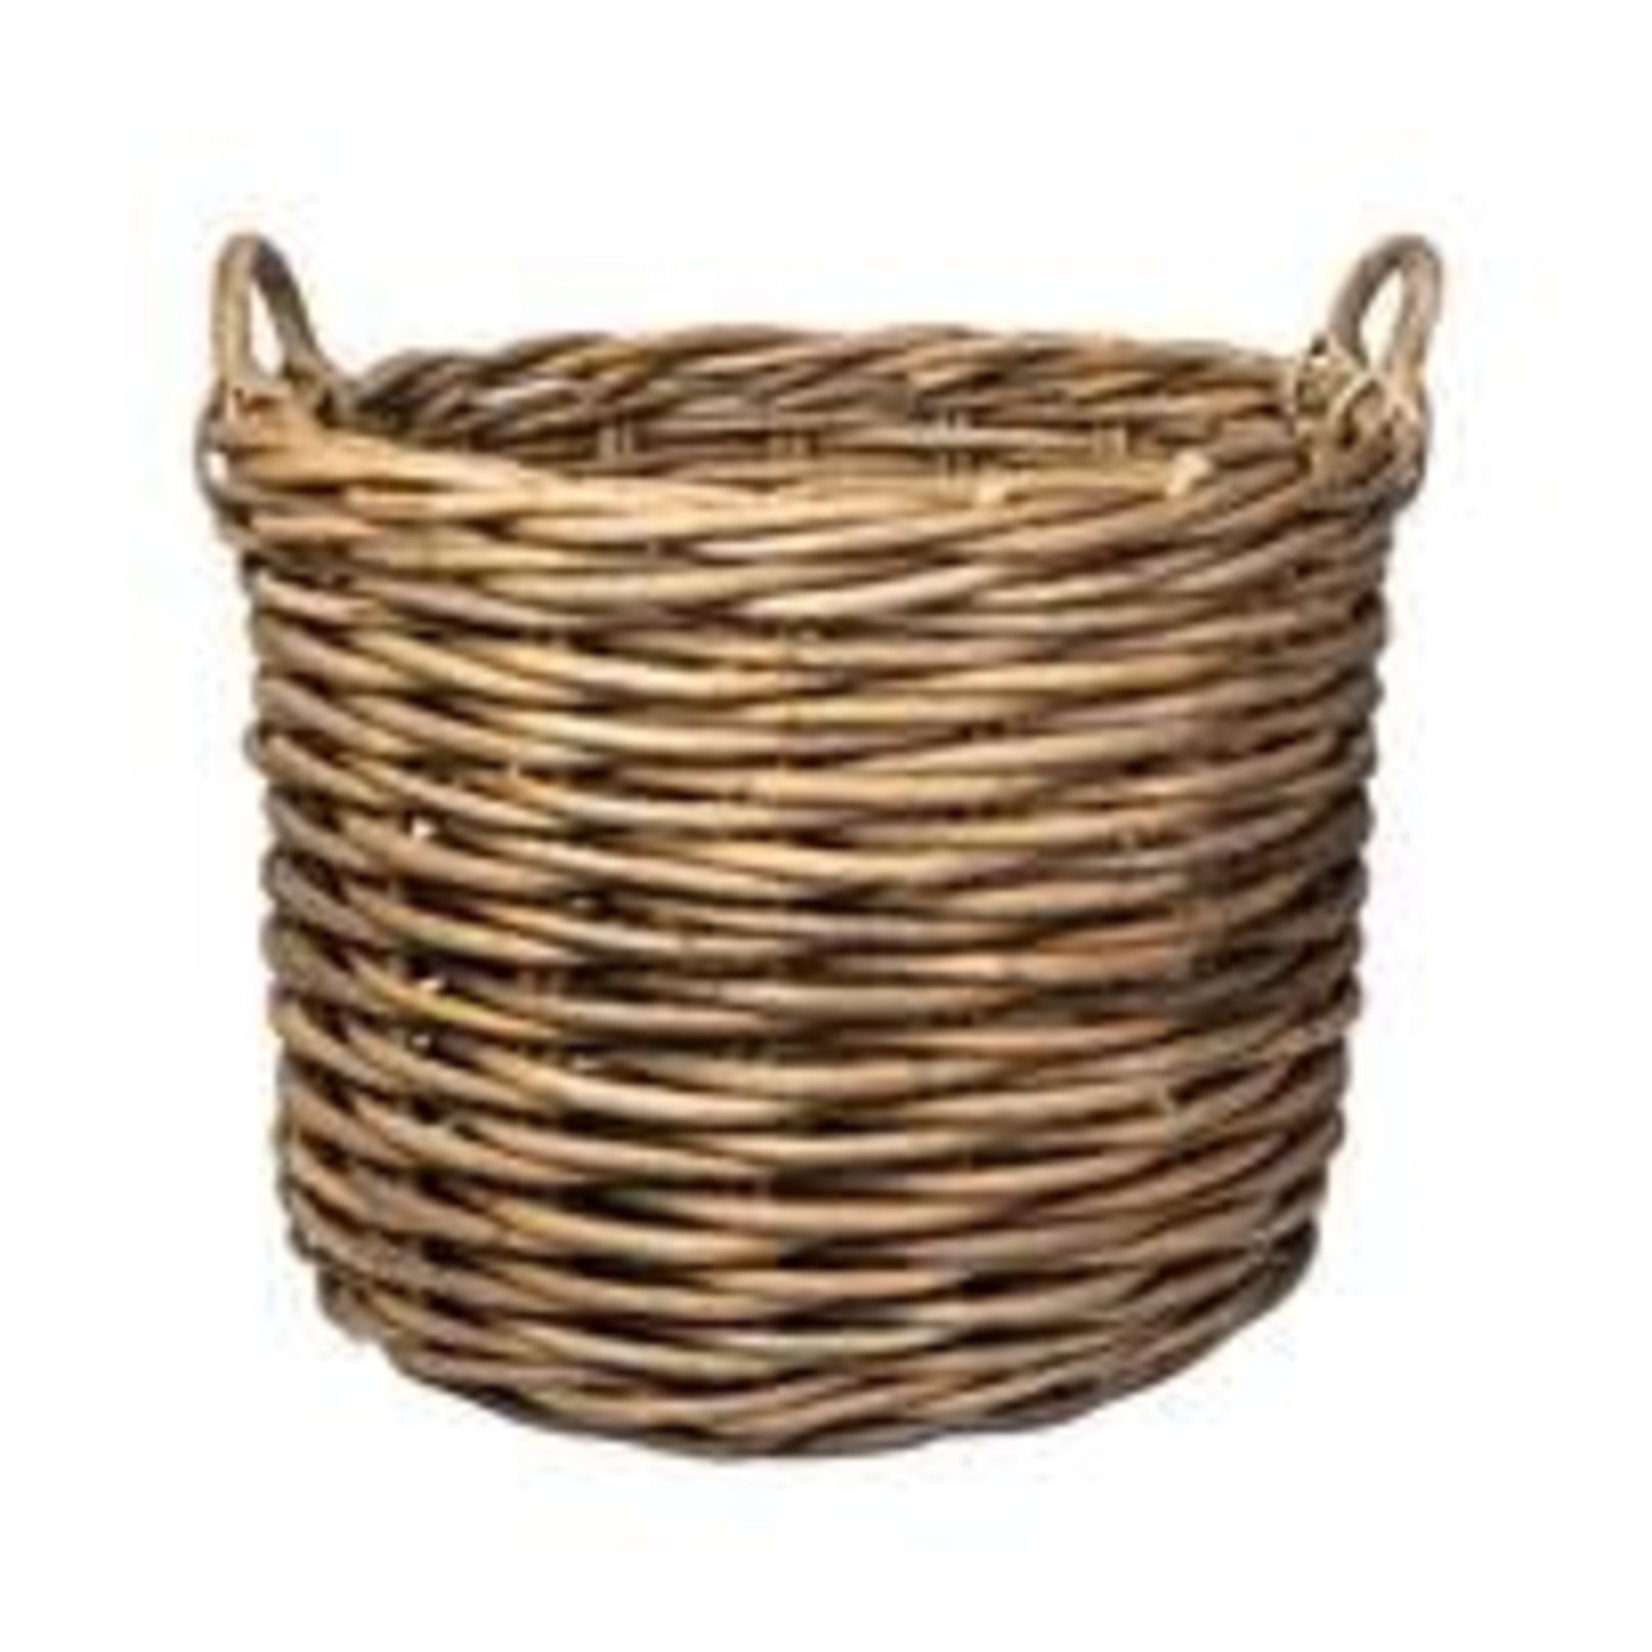 Bidk Home Medium Rattan Round Basket with Handles